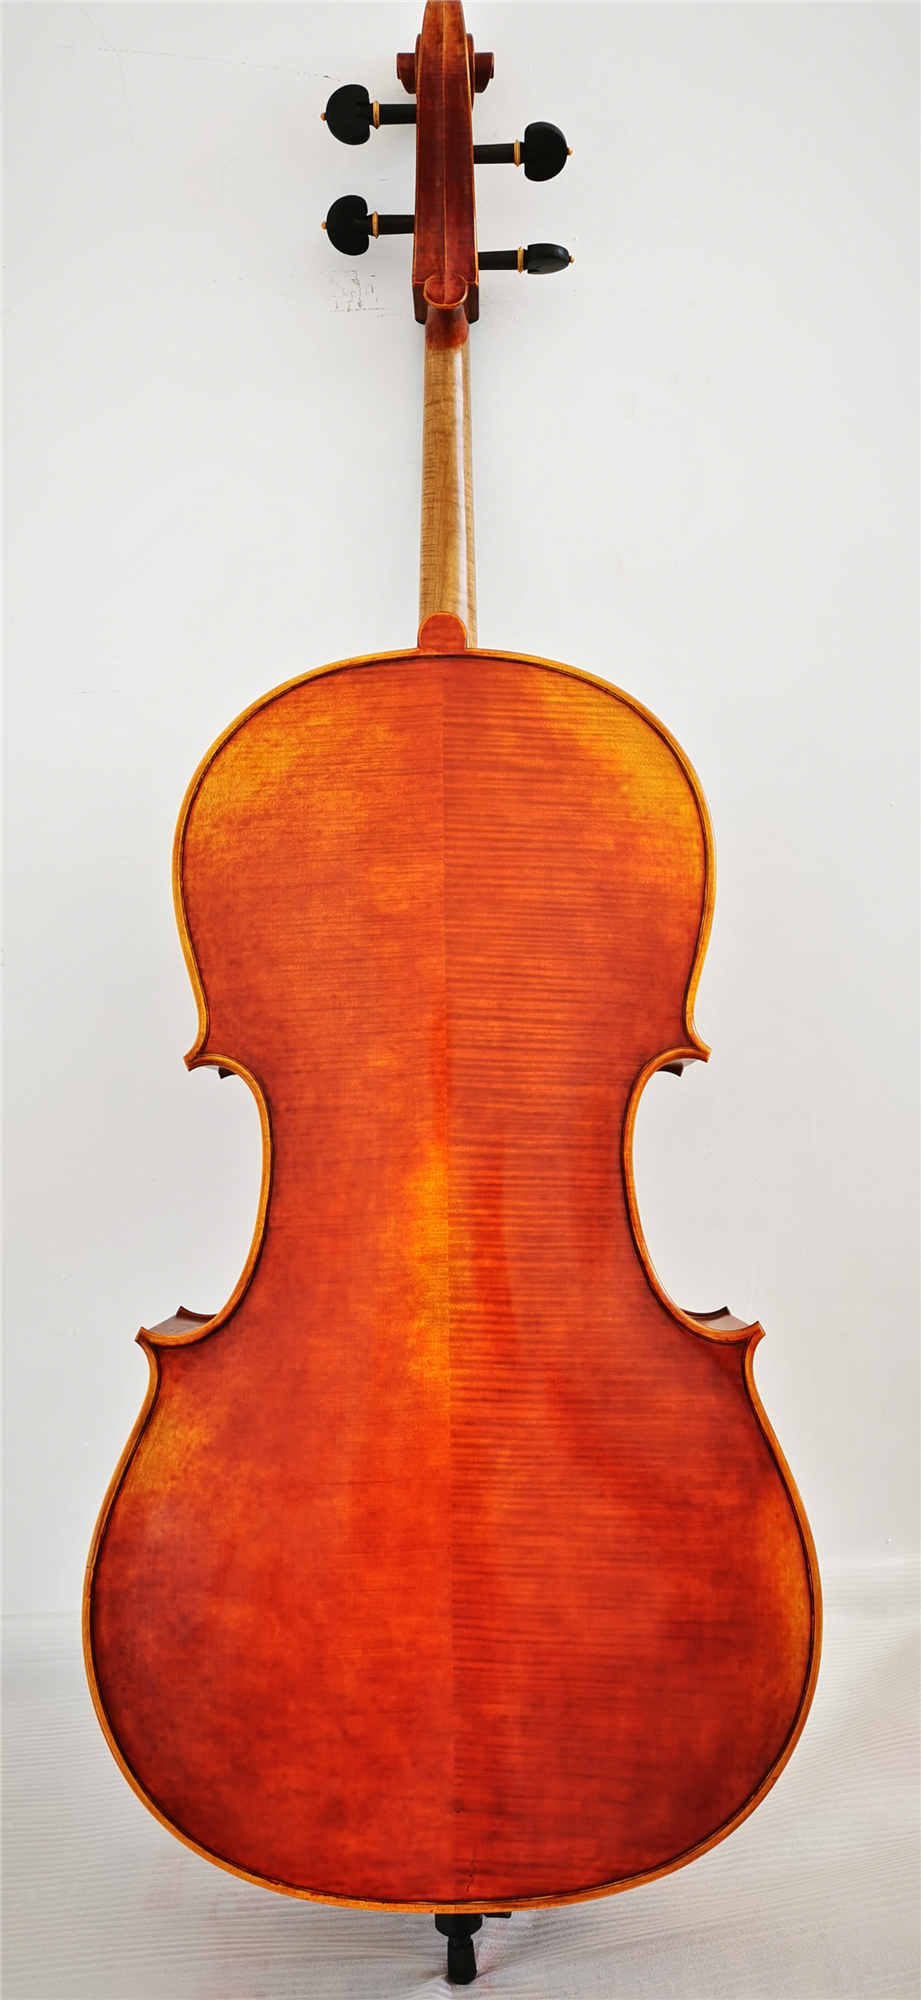 Cello Jm Coa 13 2